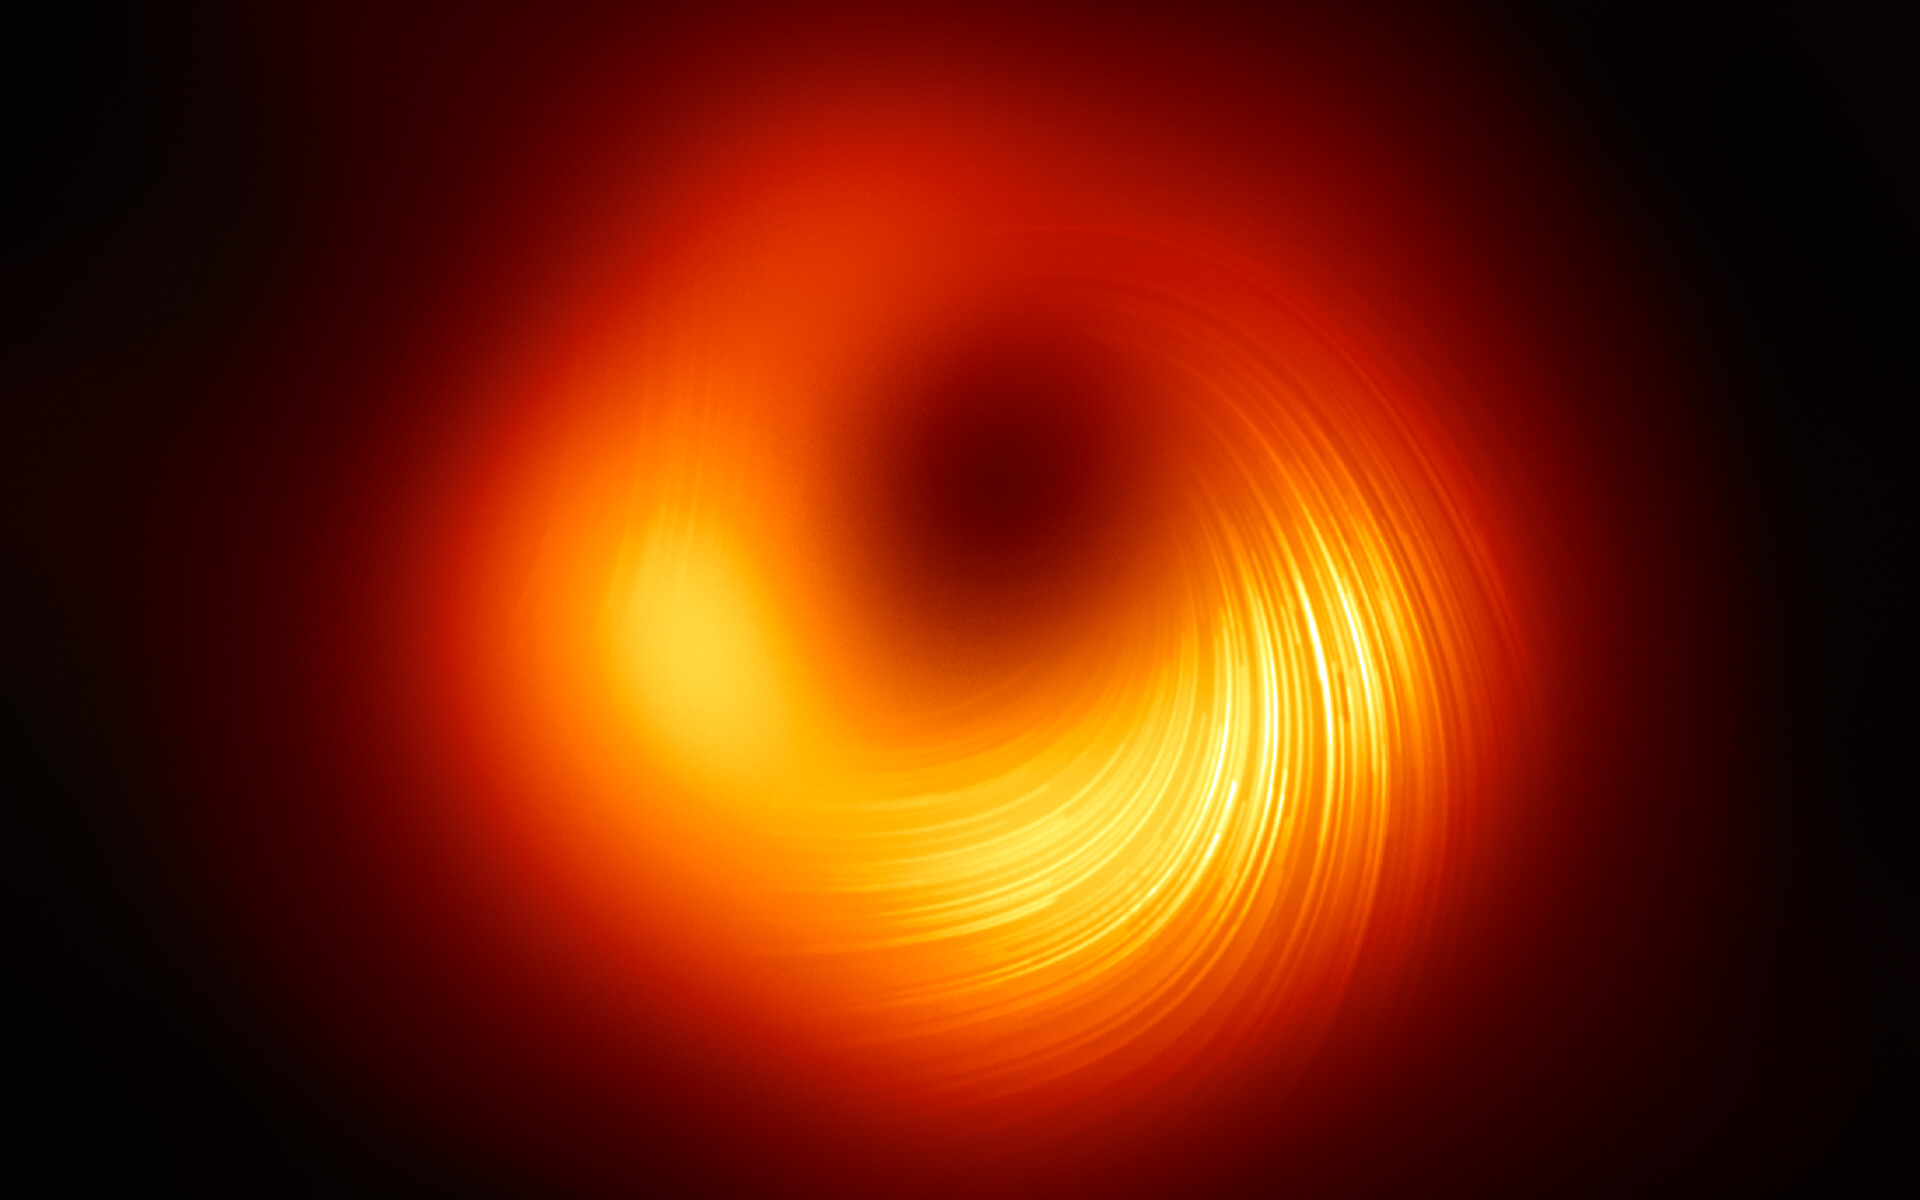 Capturan por primera vez la imagen de los campos magnéticos presentes en los límites del agujero negro de M87